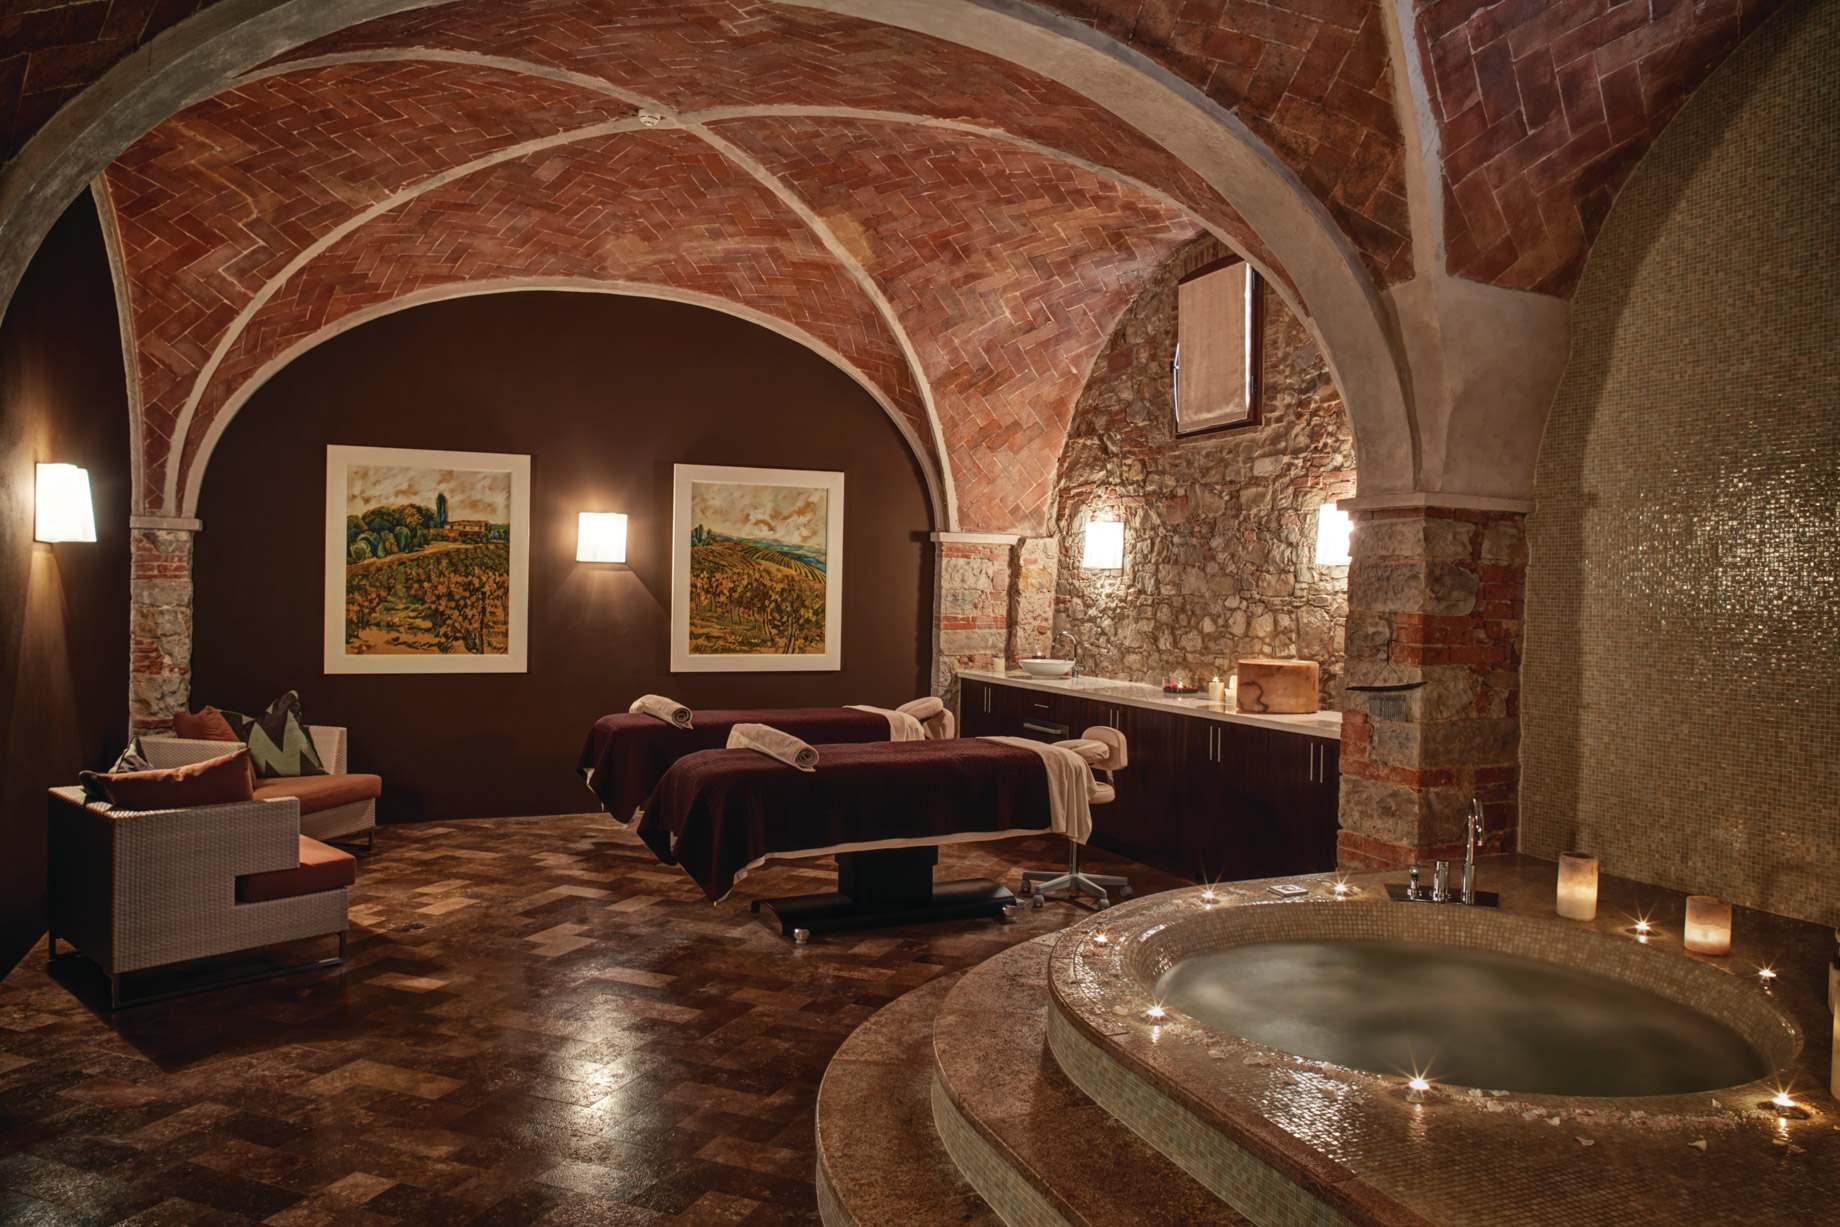 Castello di Casole, A Belmond Hotel, Tuscany – Casole d’Elsa, Italy – Spa